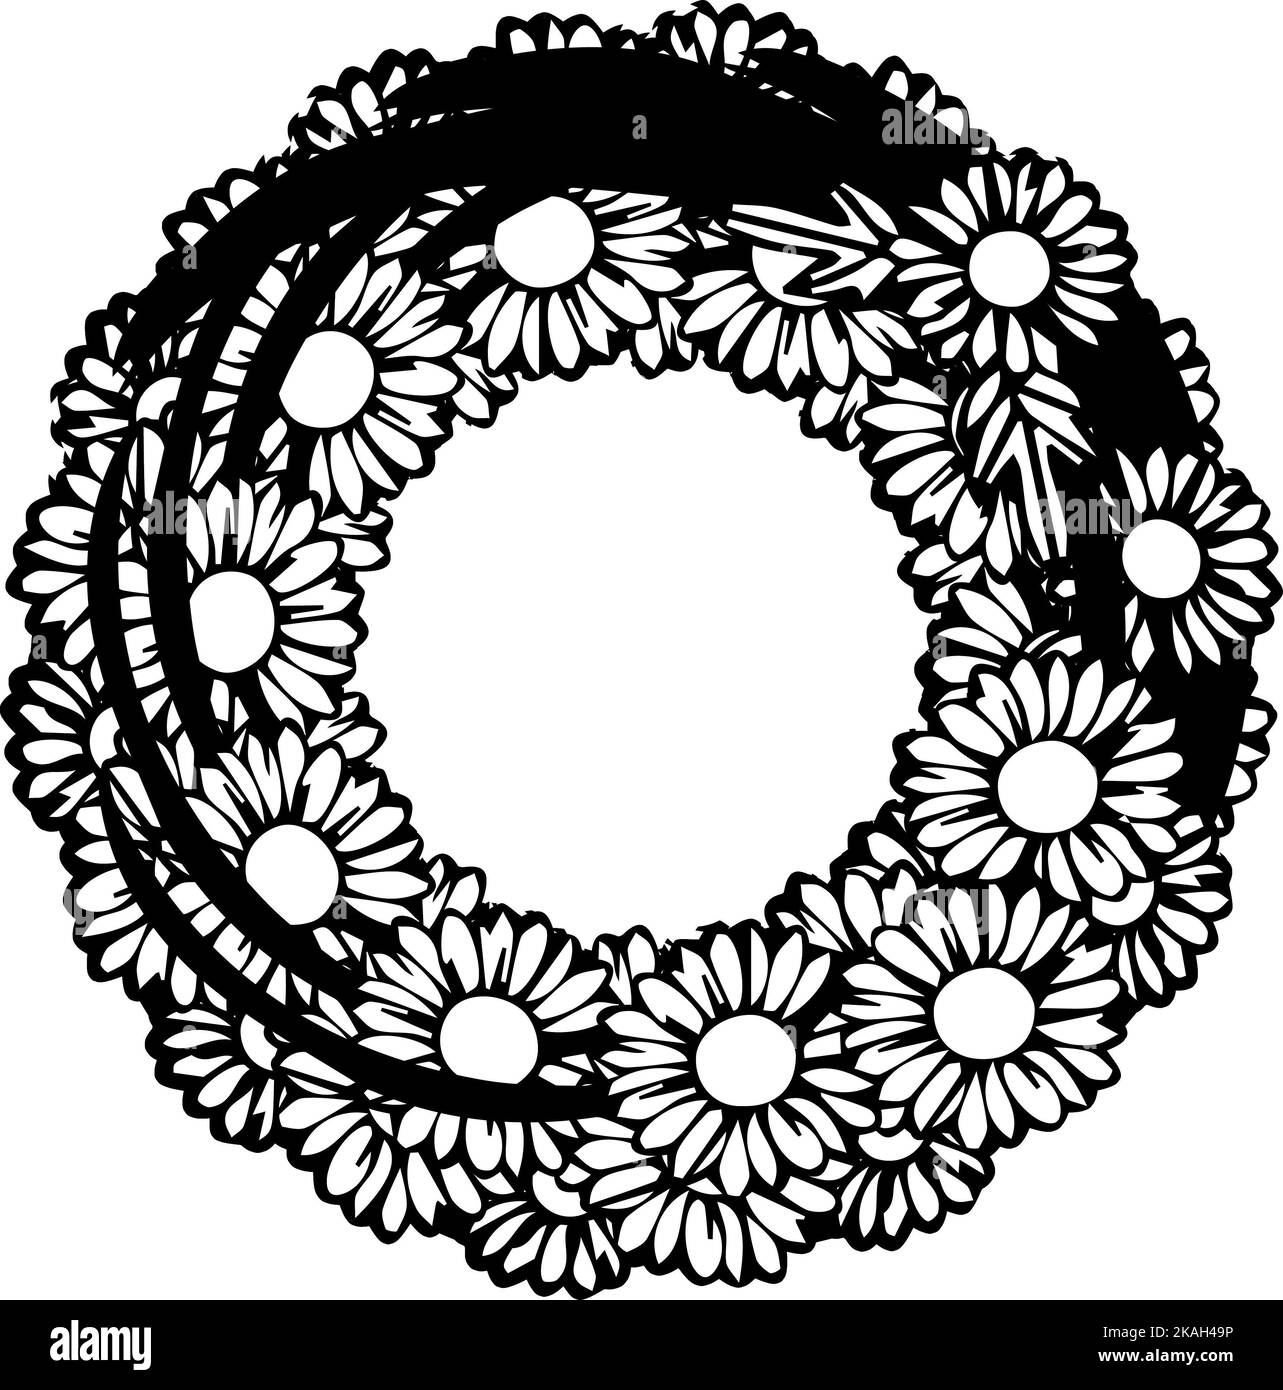 Conception de mandala différente, principalement faite de fleurs et de lignes centrées sur un fond blanc Banque D'Images